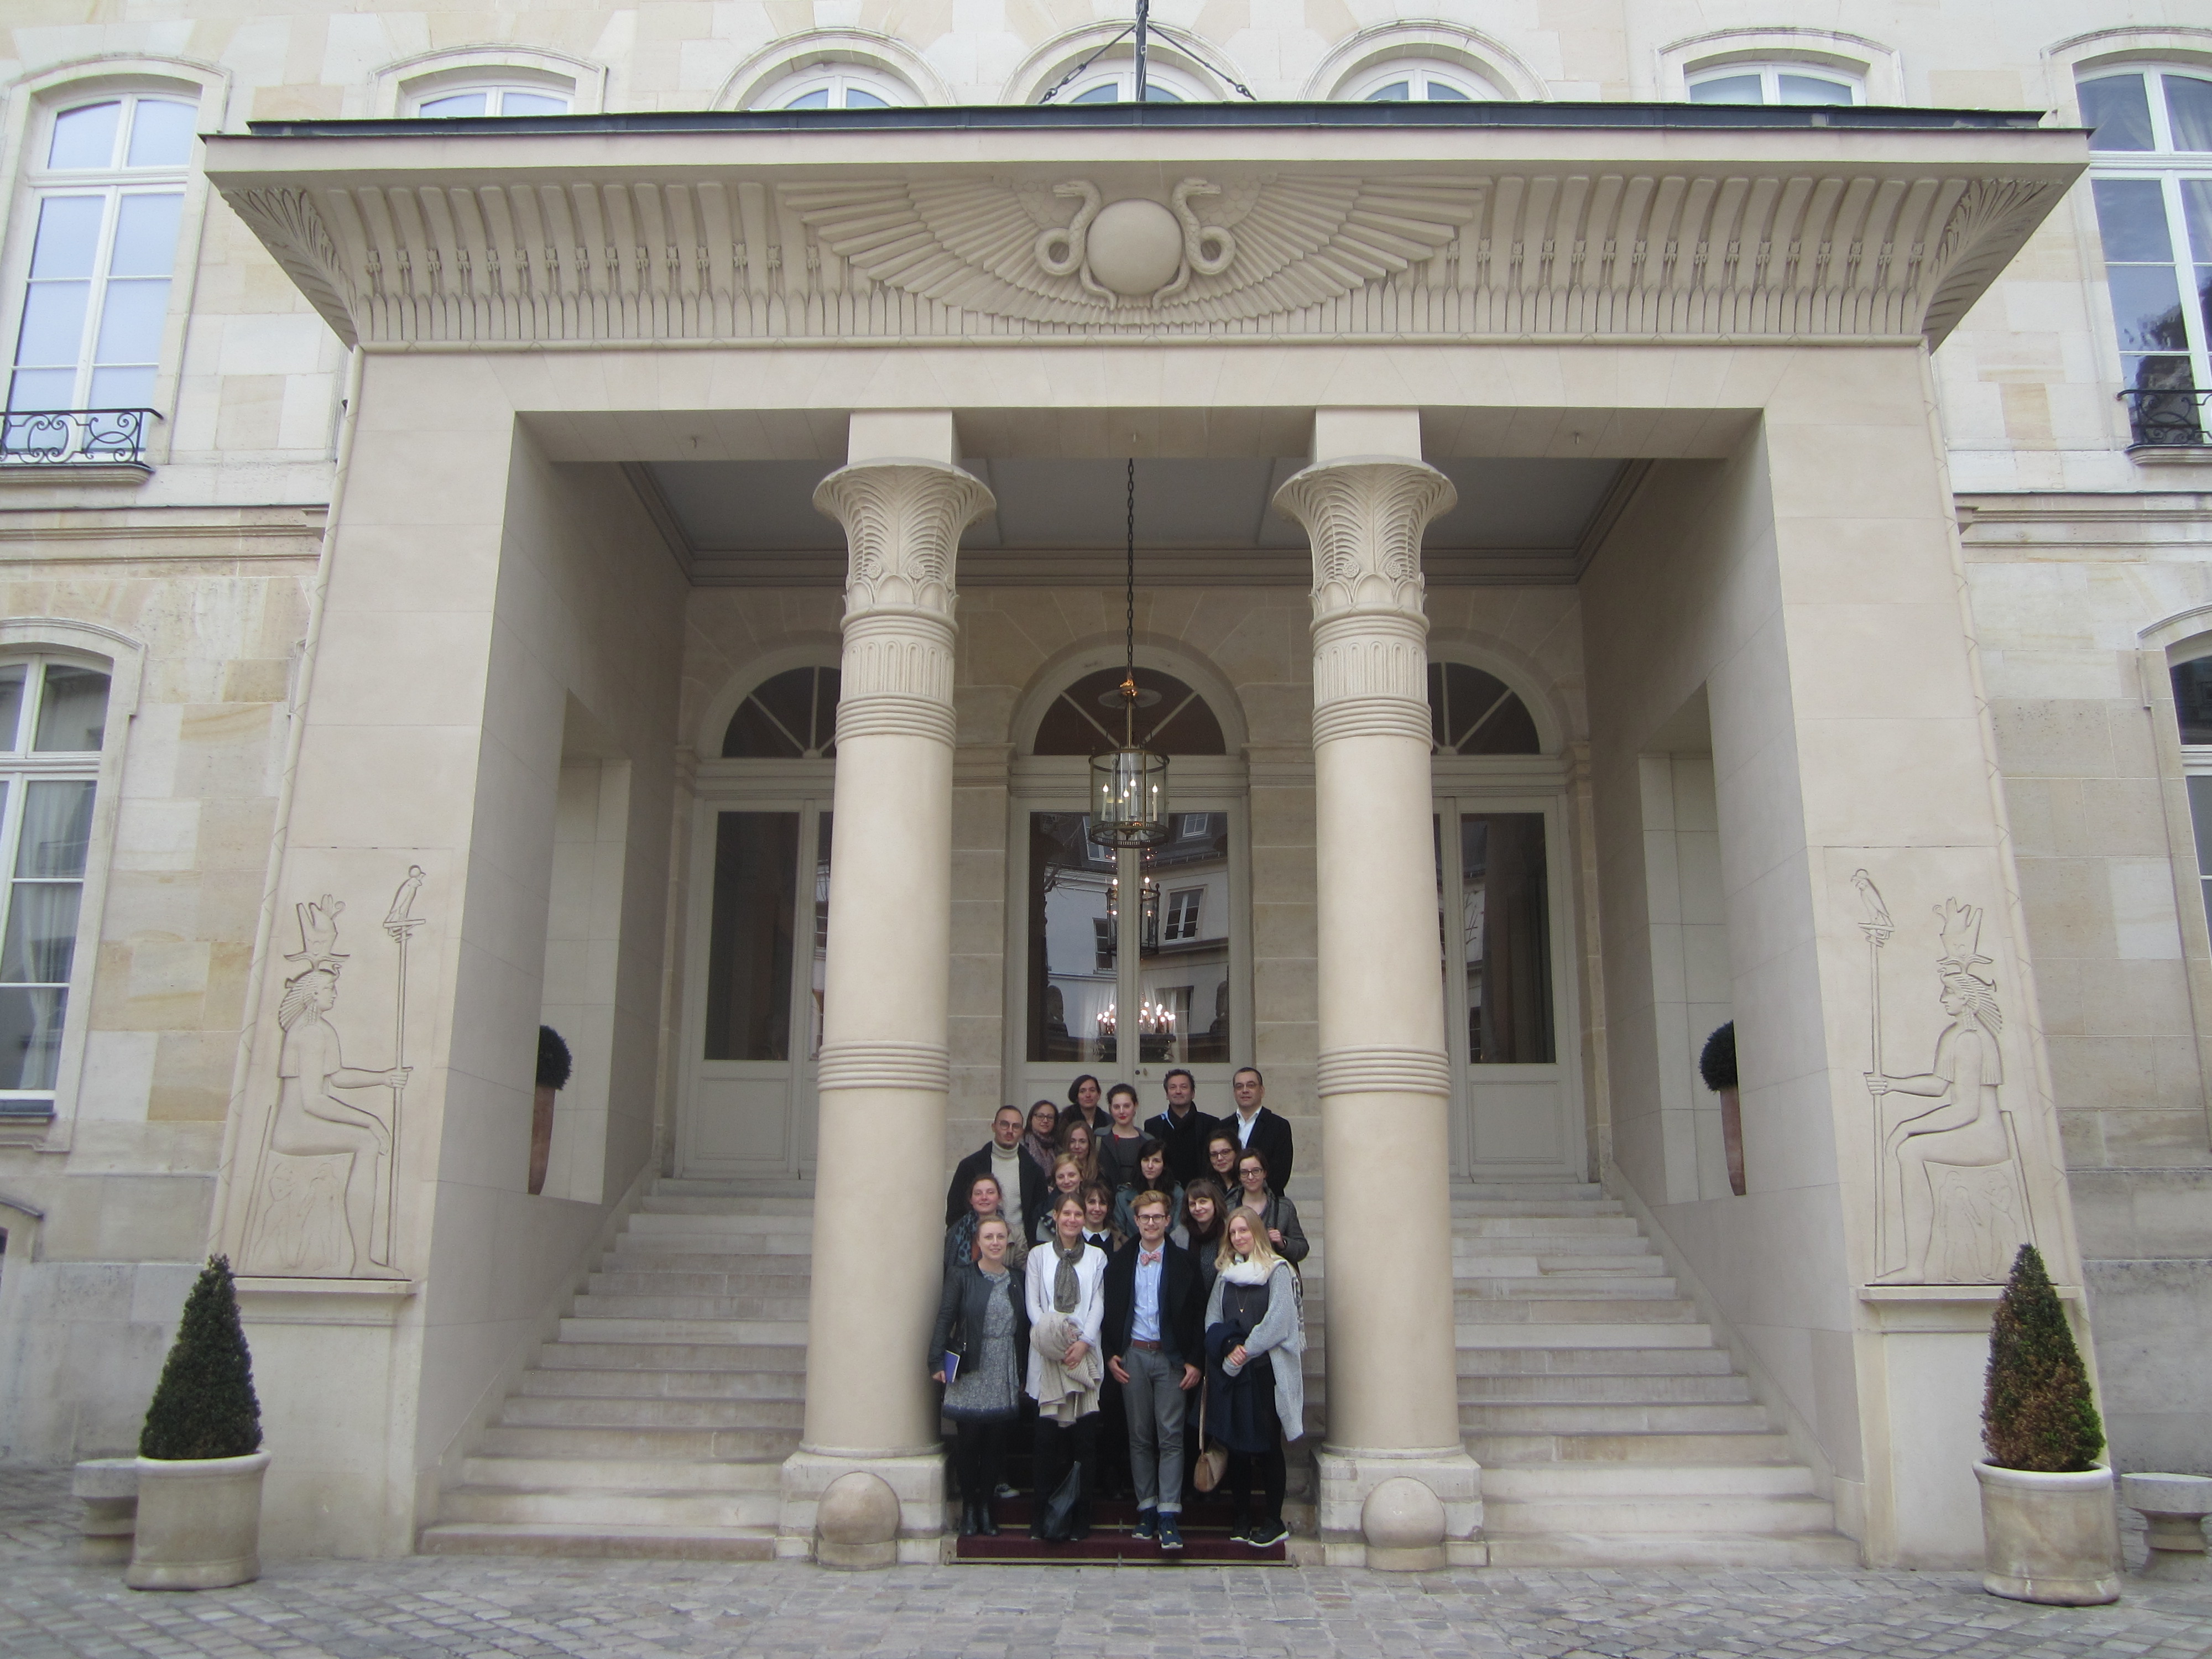 Gruppenfoto vor dem Hôtel Beauharnais, Paris